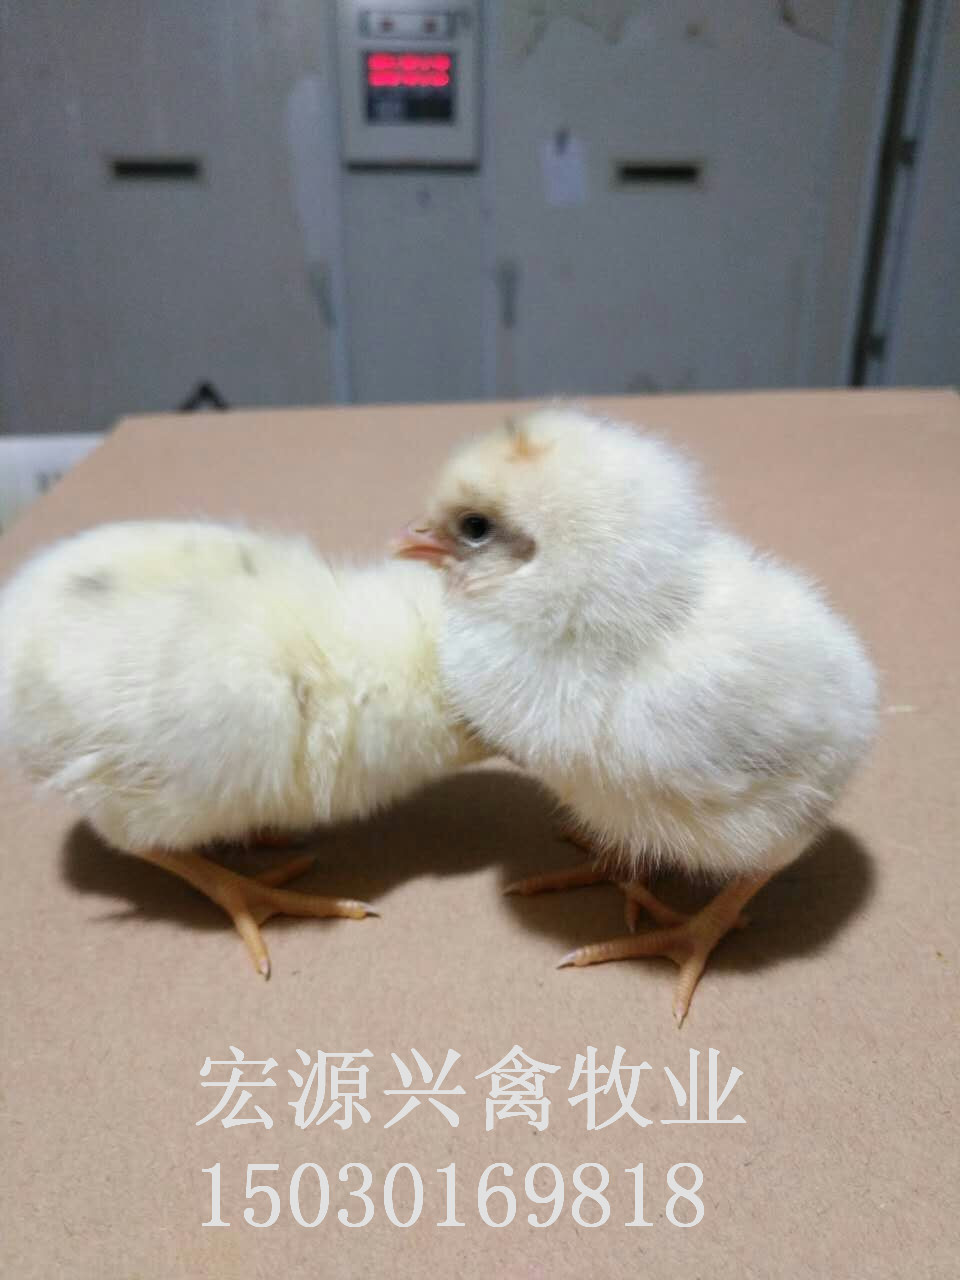 石家庄商品代蛋鸡海兰灰优质鸡苗图片